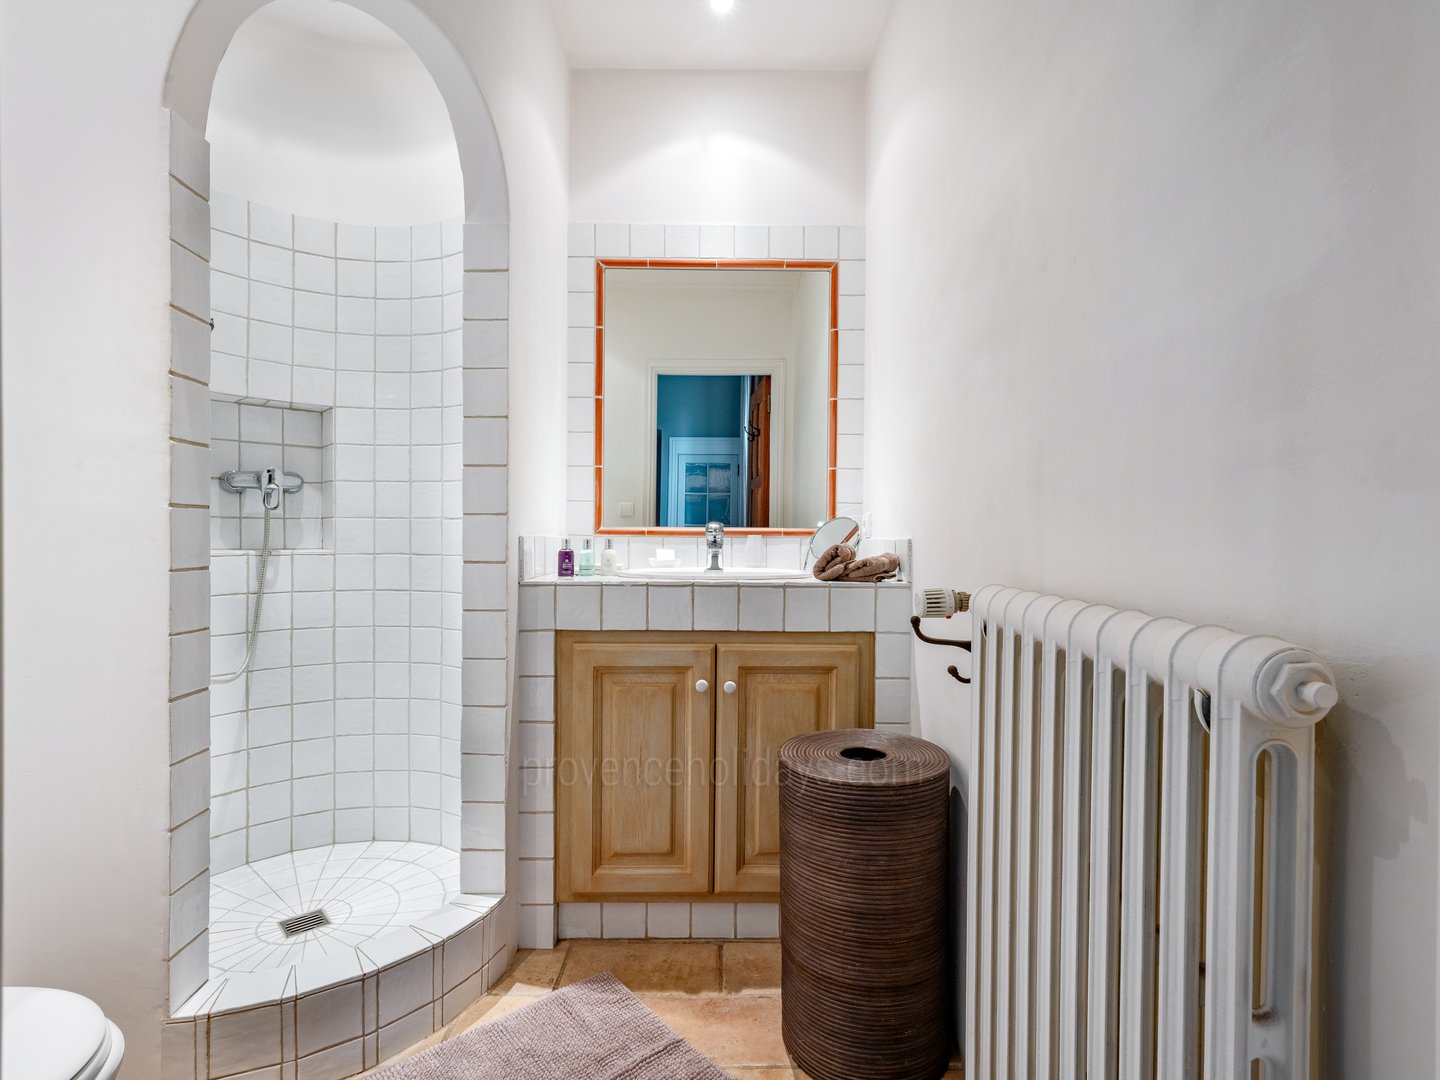 56 - Eden Provençal: Villa: Bathroom